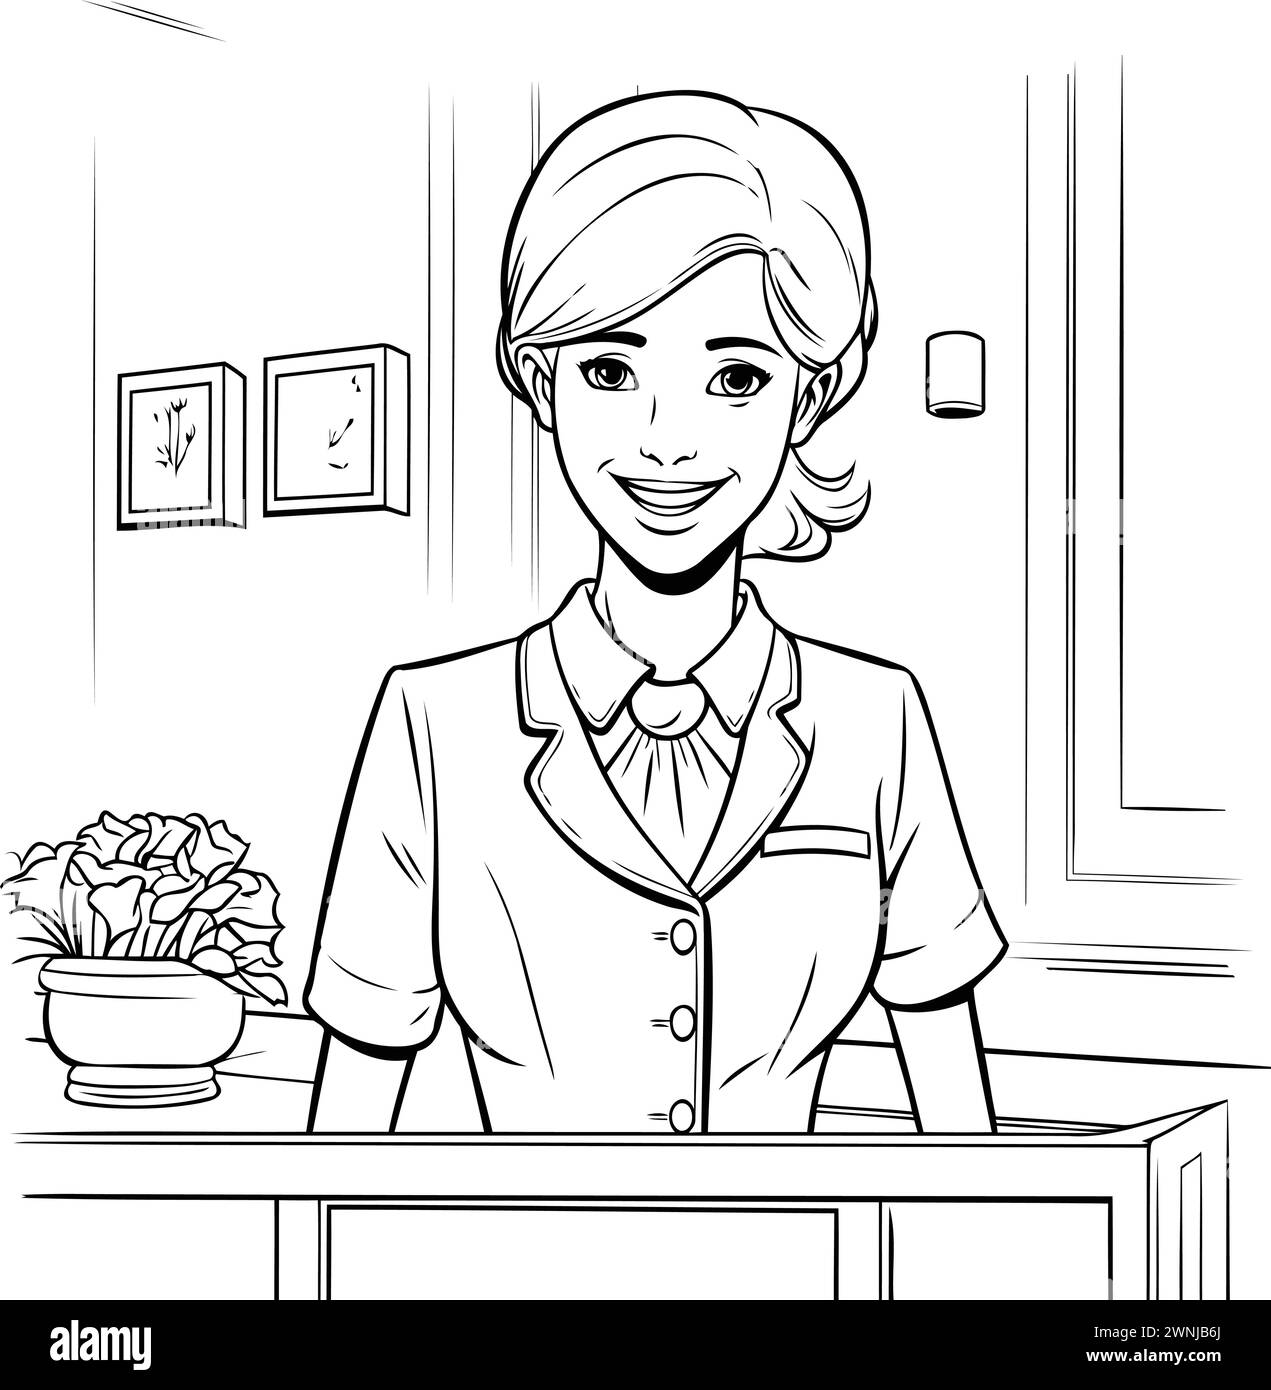 Illustration au trait d'une serveuse dans un café ou un restaurant. Illustration de Vecteur